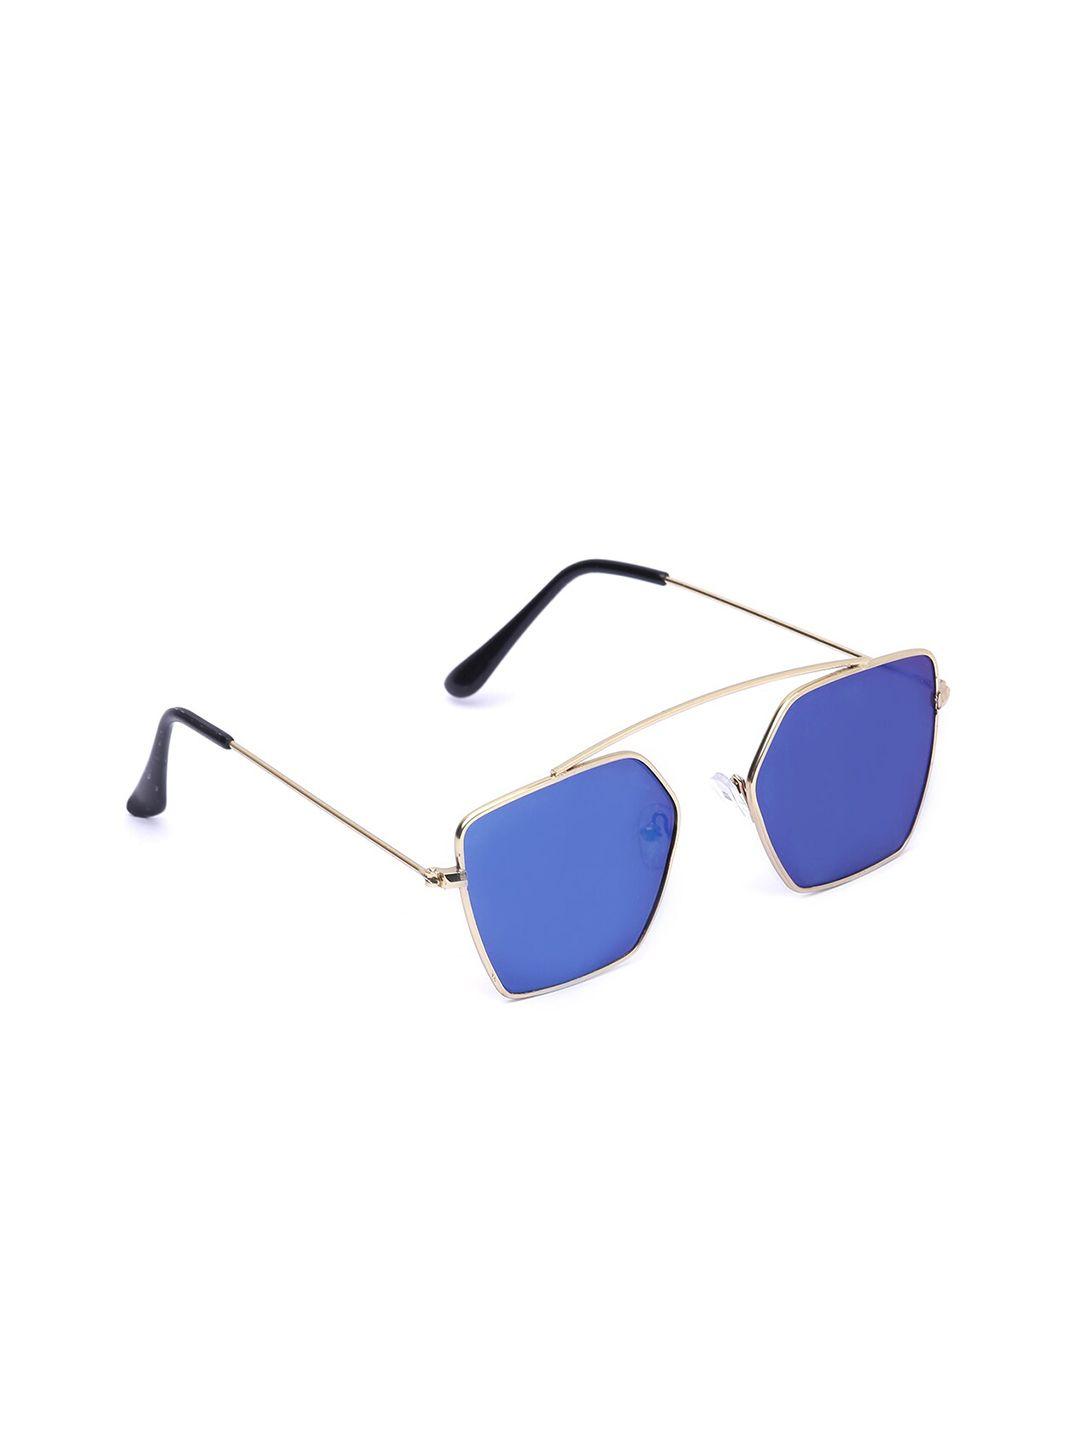 swiss design unisex blue lens & gold-toned full rim other sunglasses sdsg21-2255704-blue